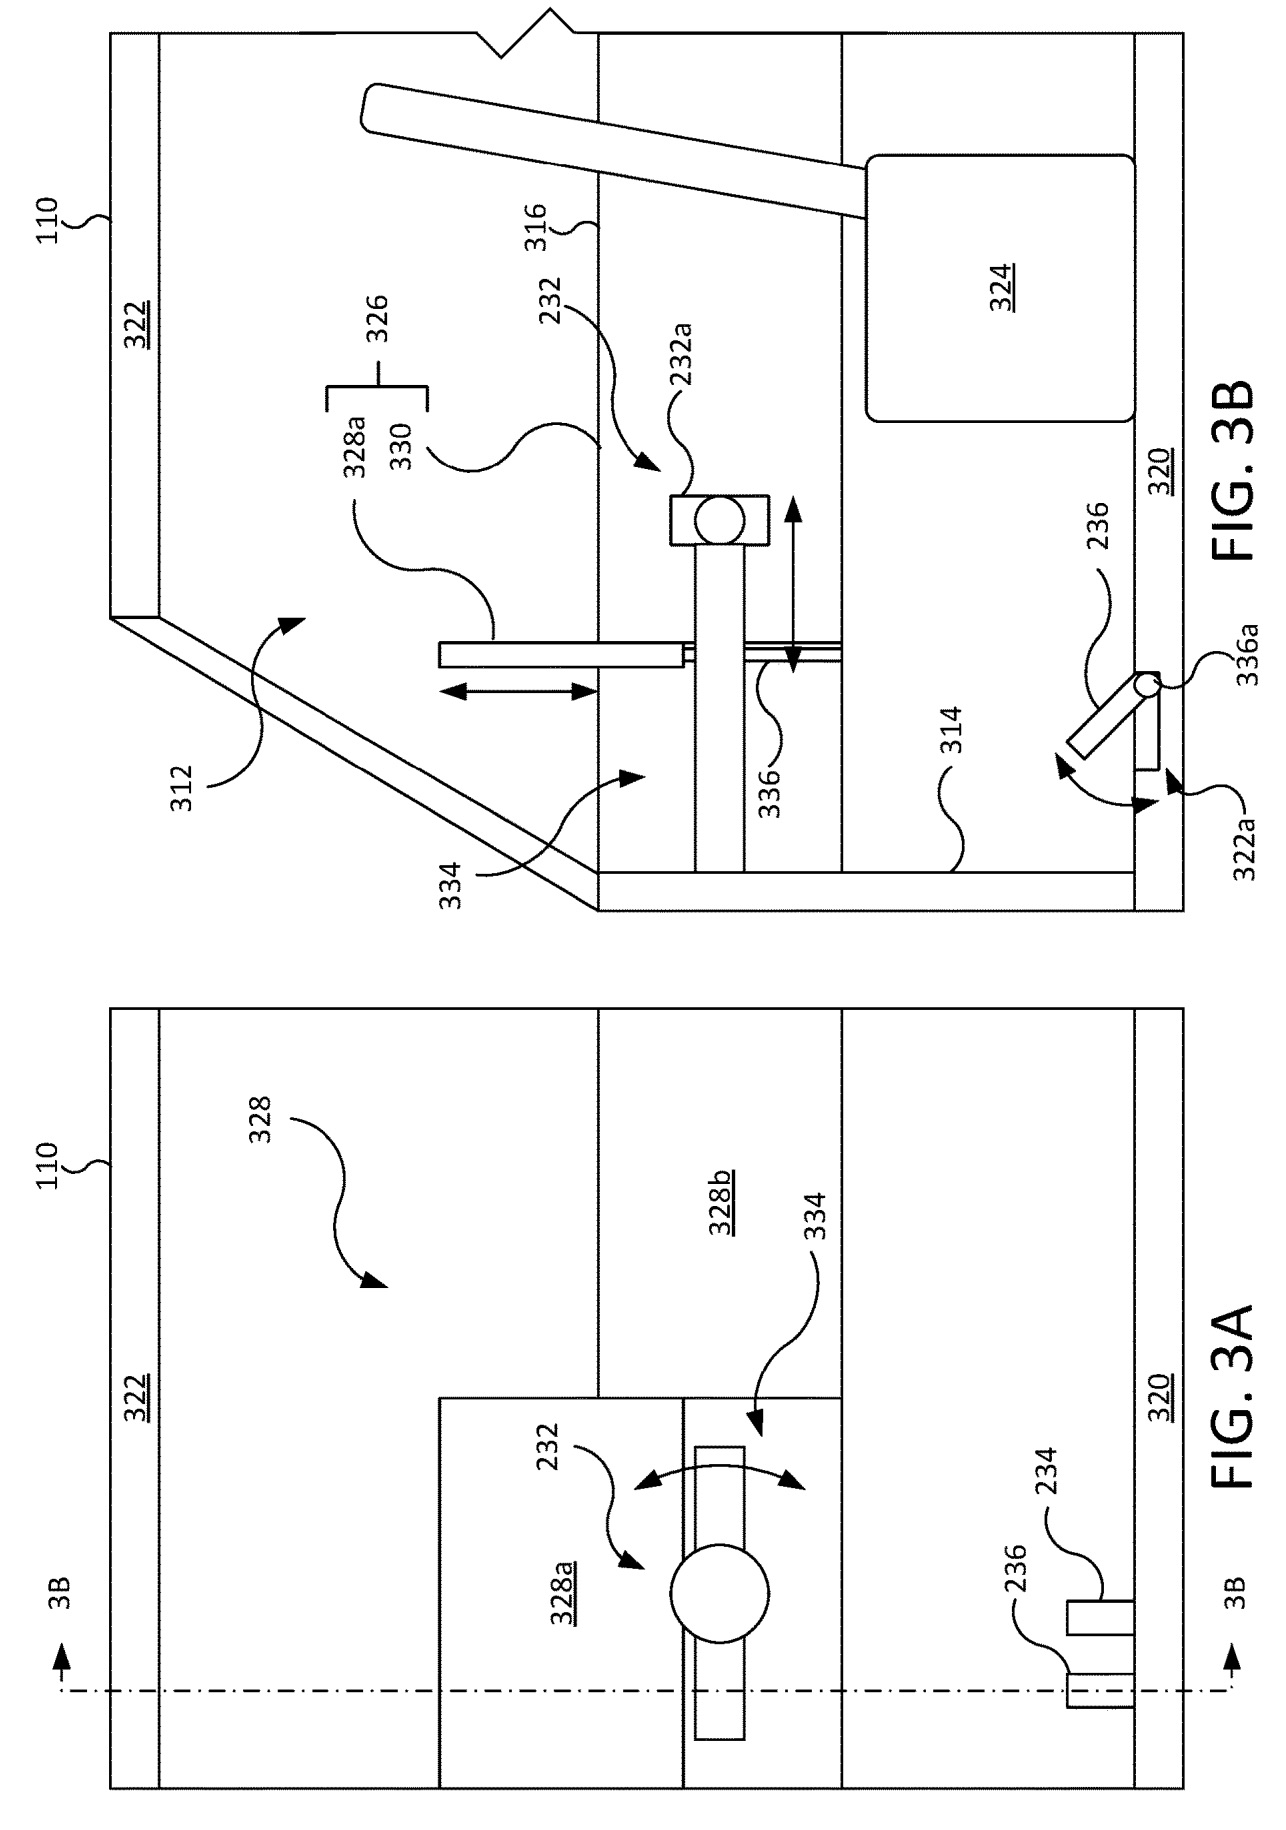 Gráficos en una patente de Apple que describen un sistema para esconder el volante y pedales de un coche cuando conduce autónomamente.